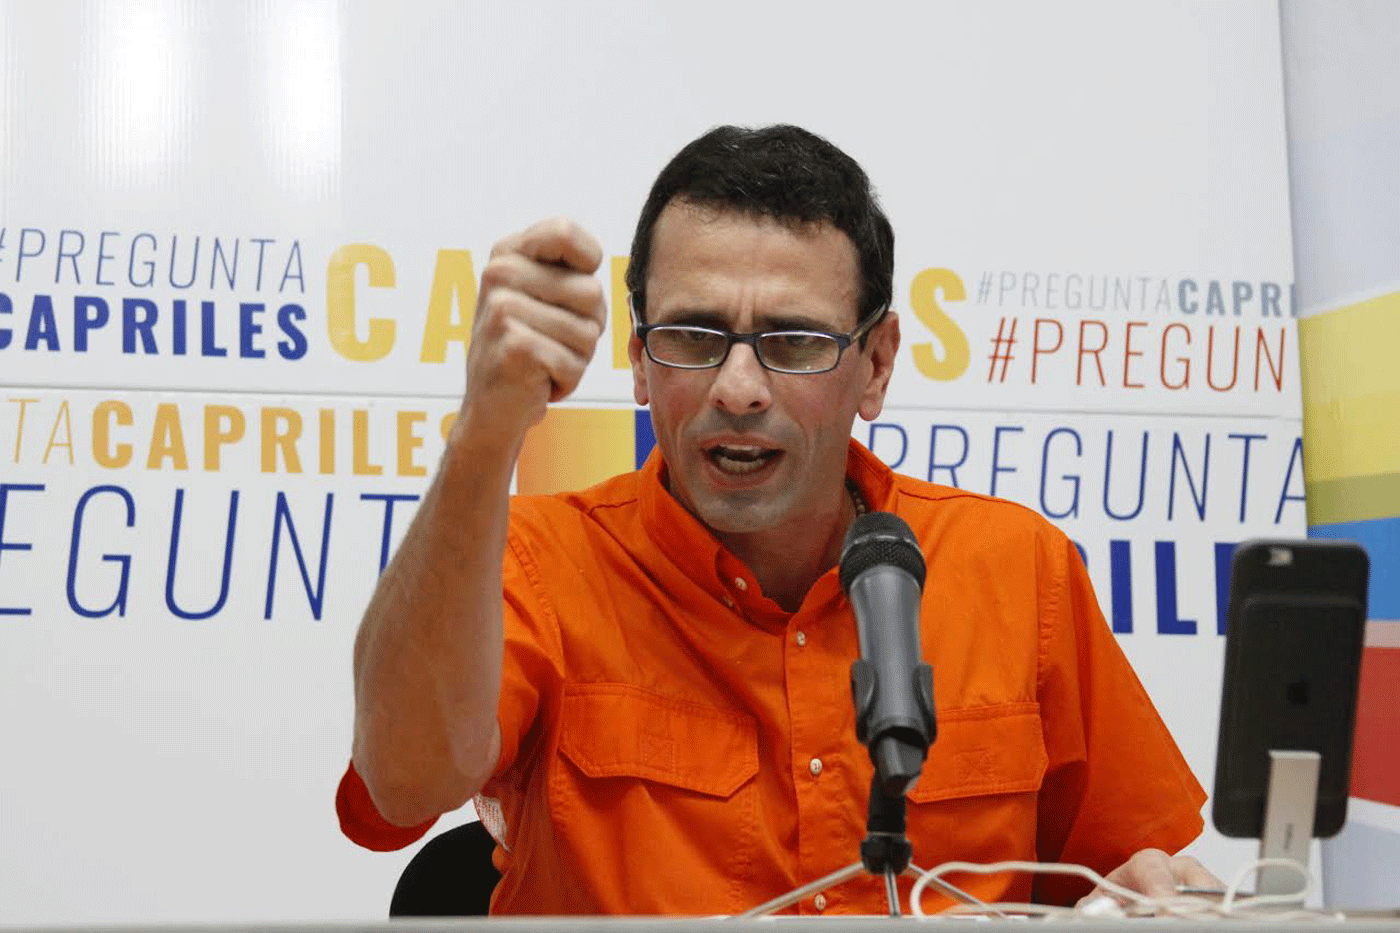 Capriles: La economía es la principal razón que nos lleva a buscar el cambio